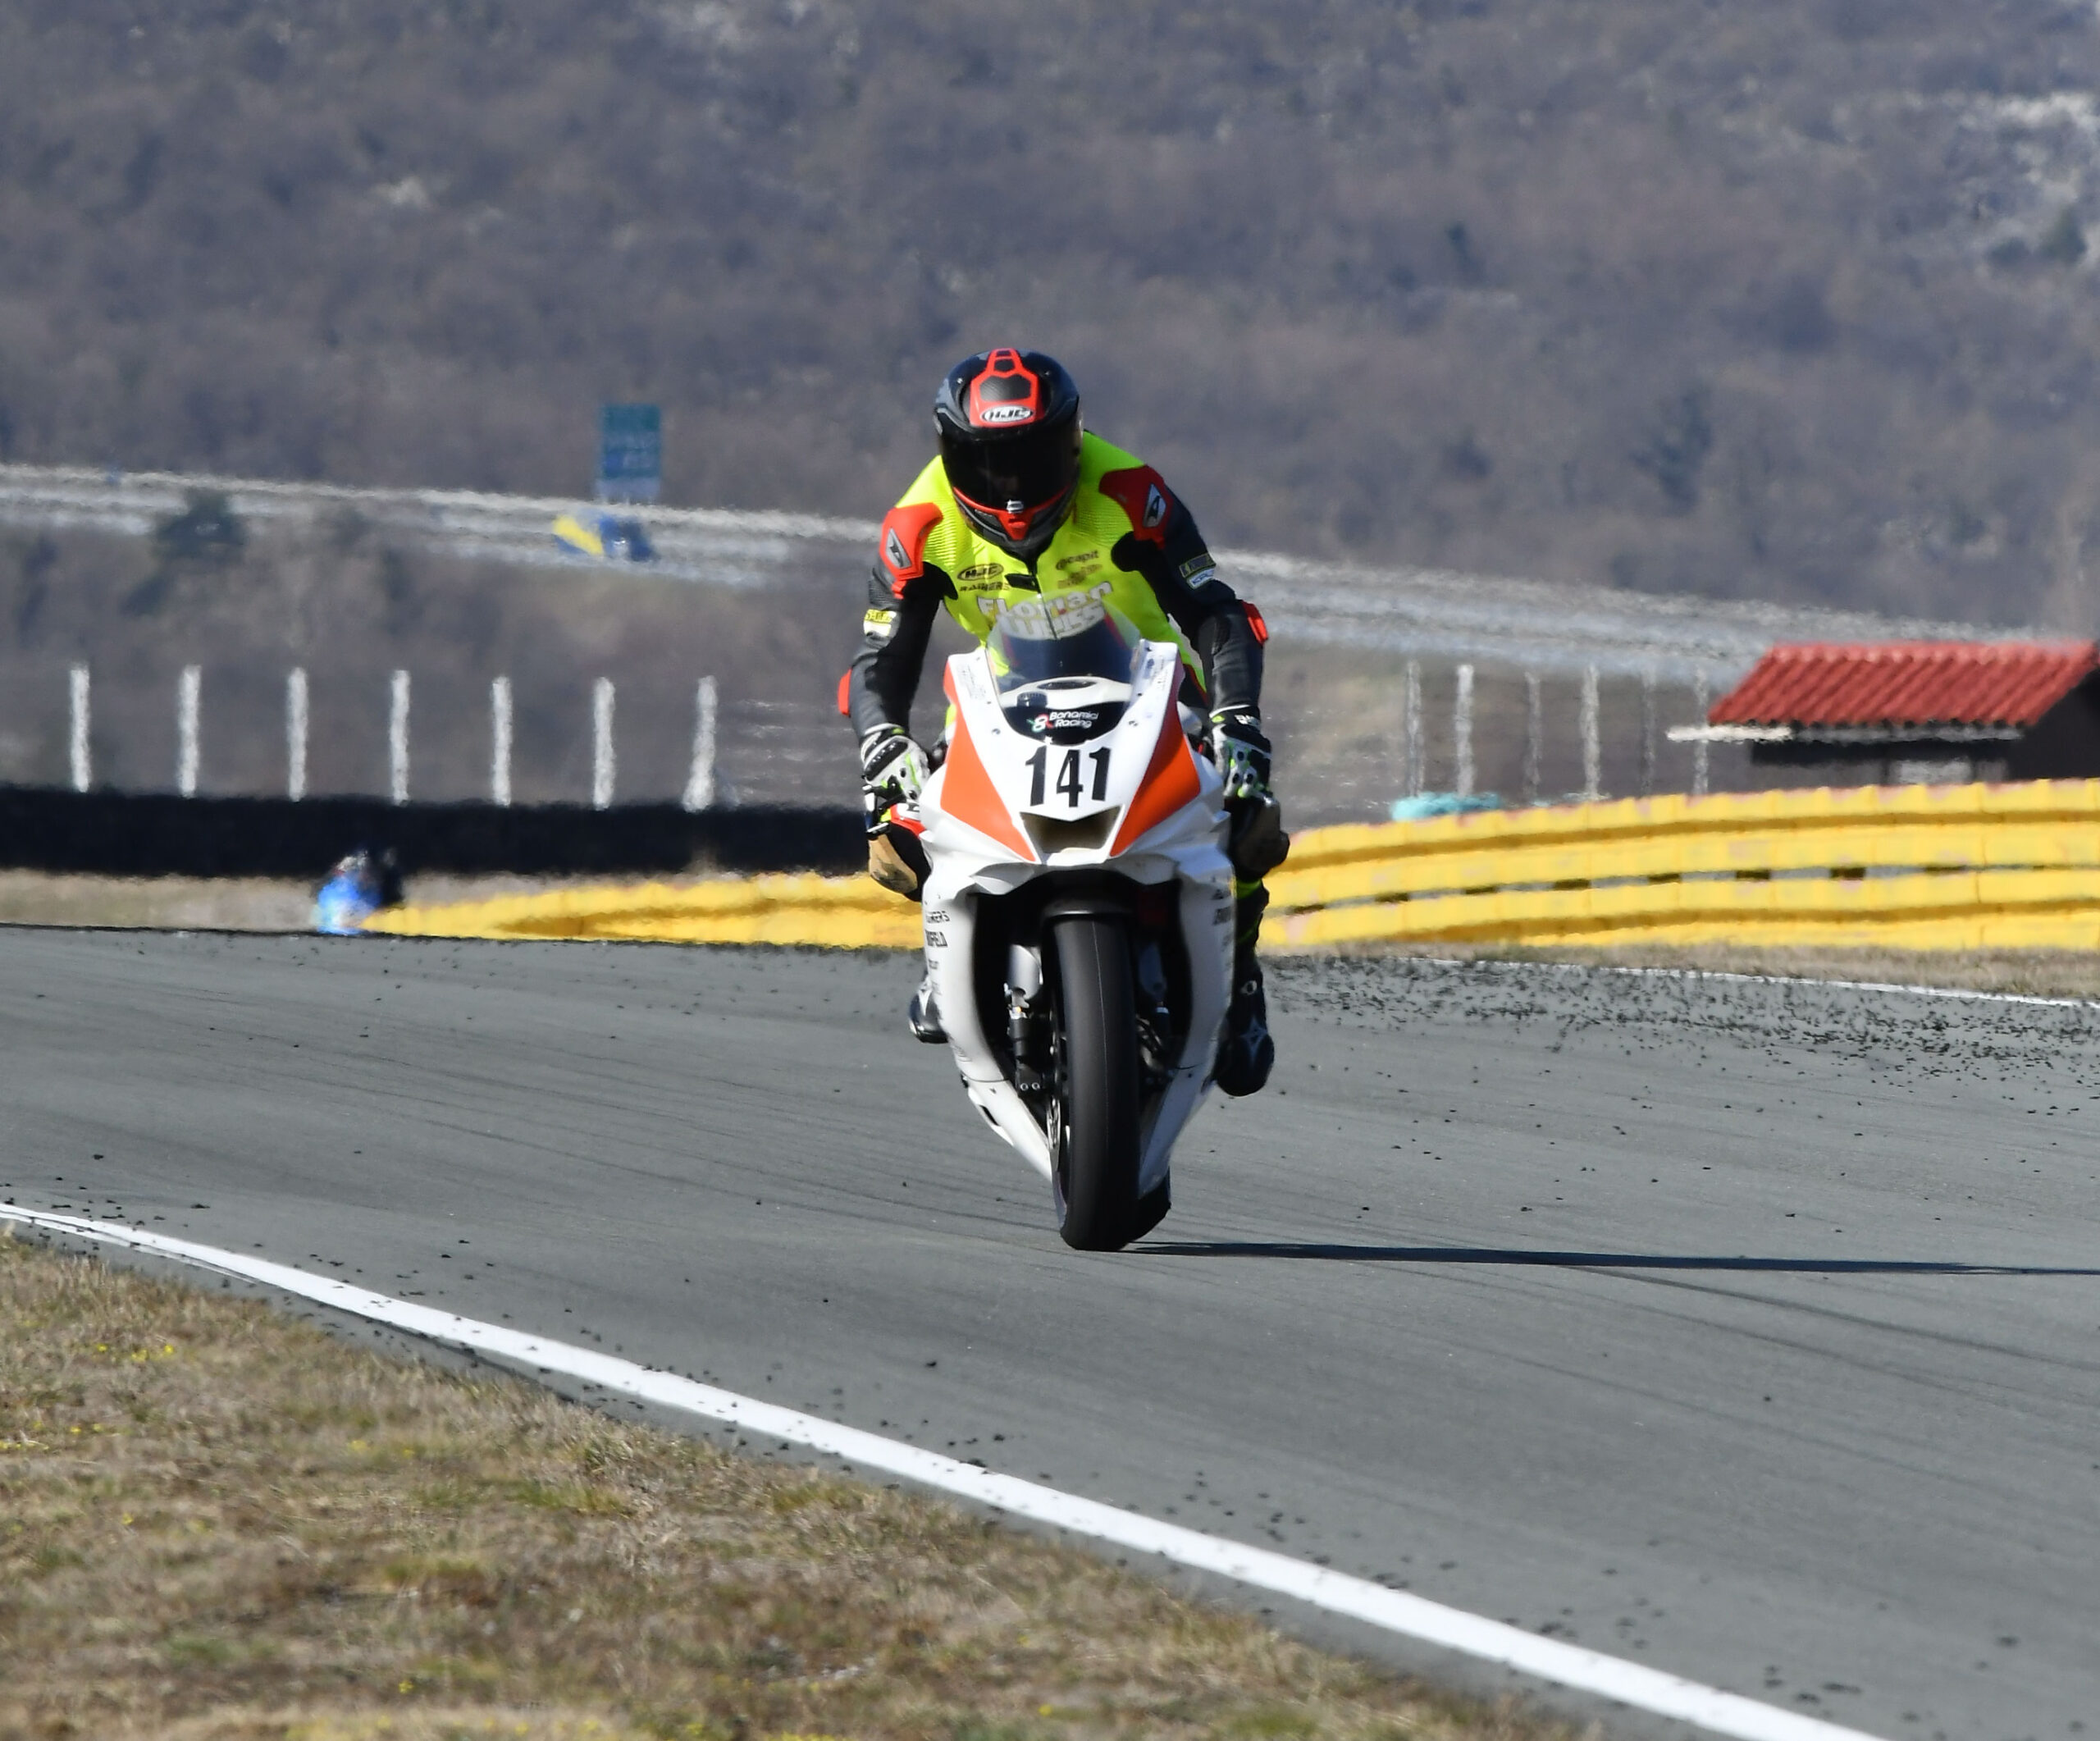 Florian Weiß #141 beim Motorrad-Training mit Yamaha R6 auf der Rennstrecke in Grobnik / Rijeka / Kroatien